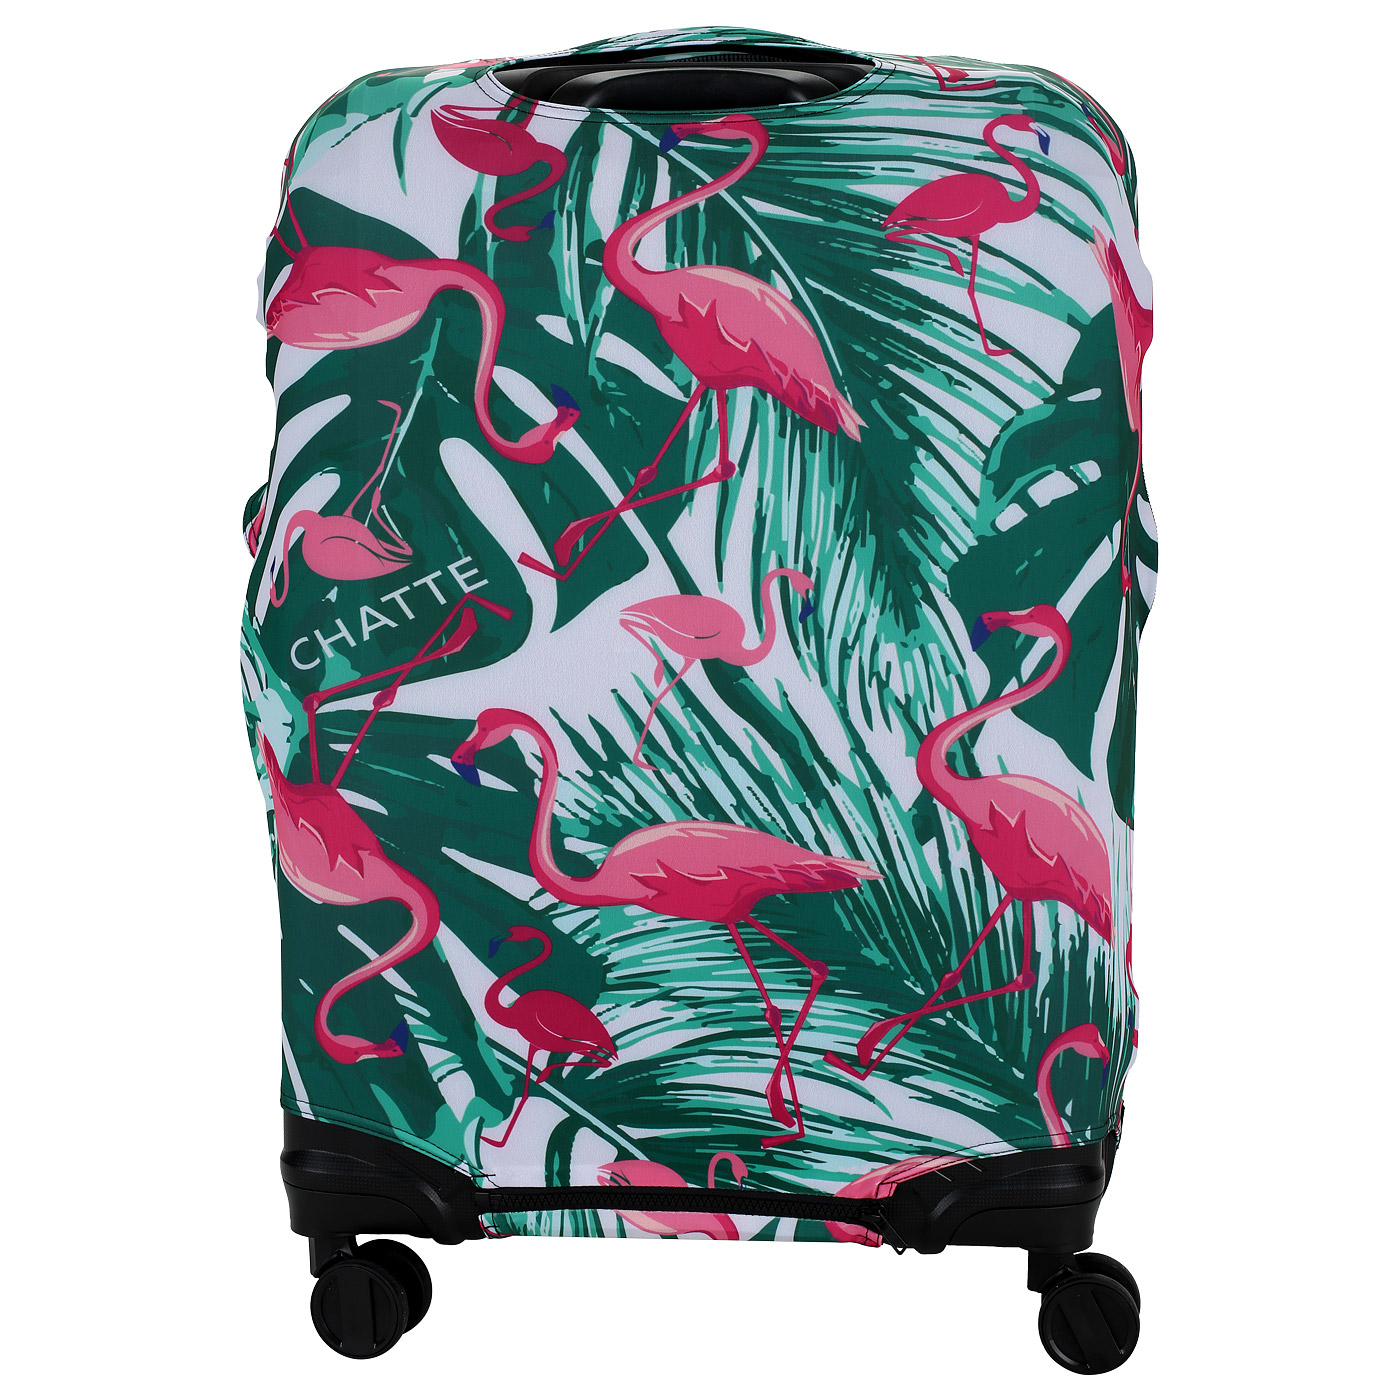 Чехол для чемодана с принтом Chatte Flamingo